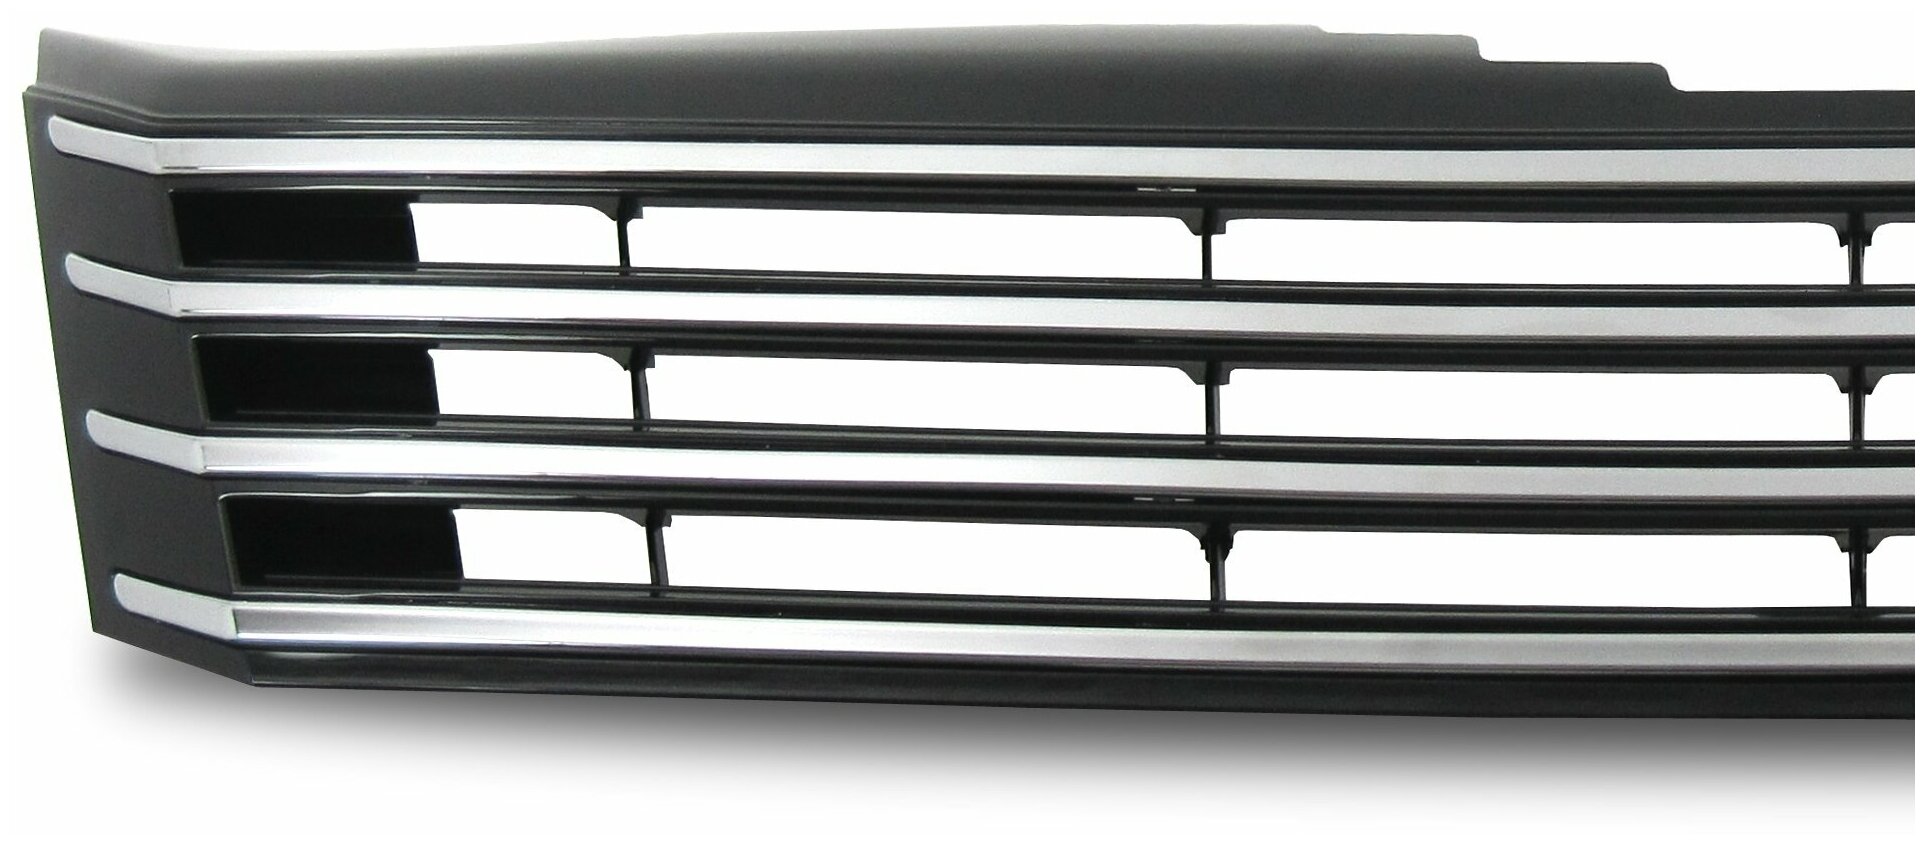 Решетка радиатора VW Passat B7 тюнинг черная глянцевая с хромом без значка